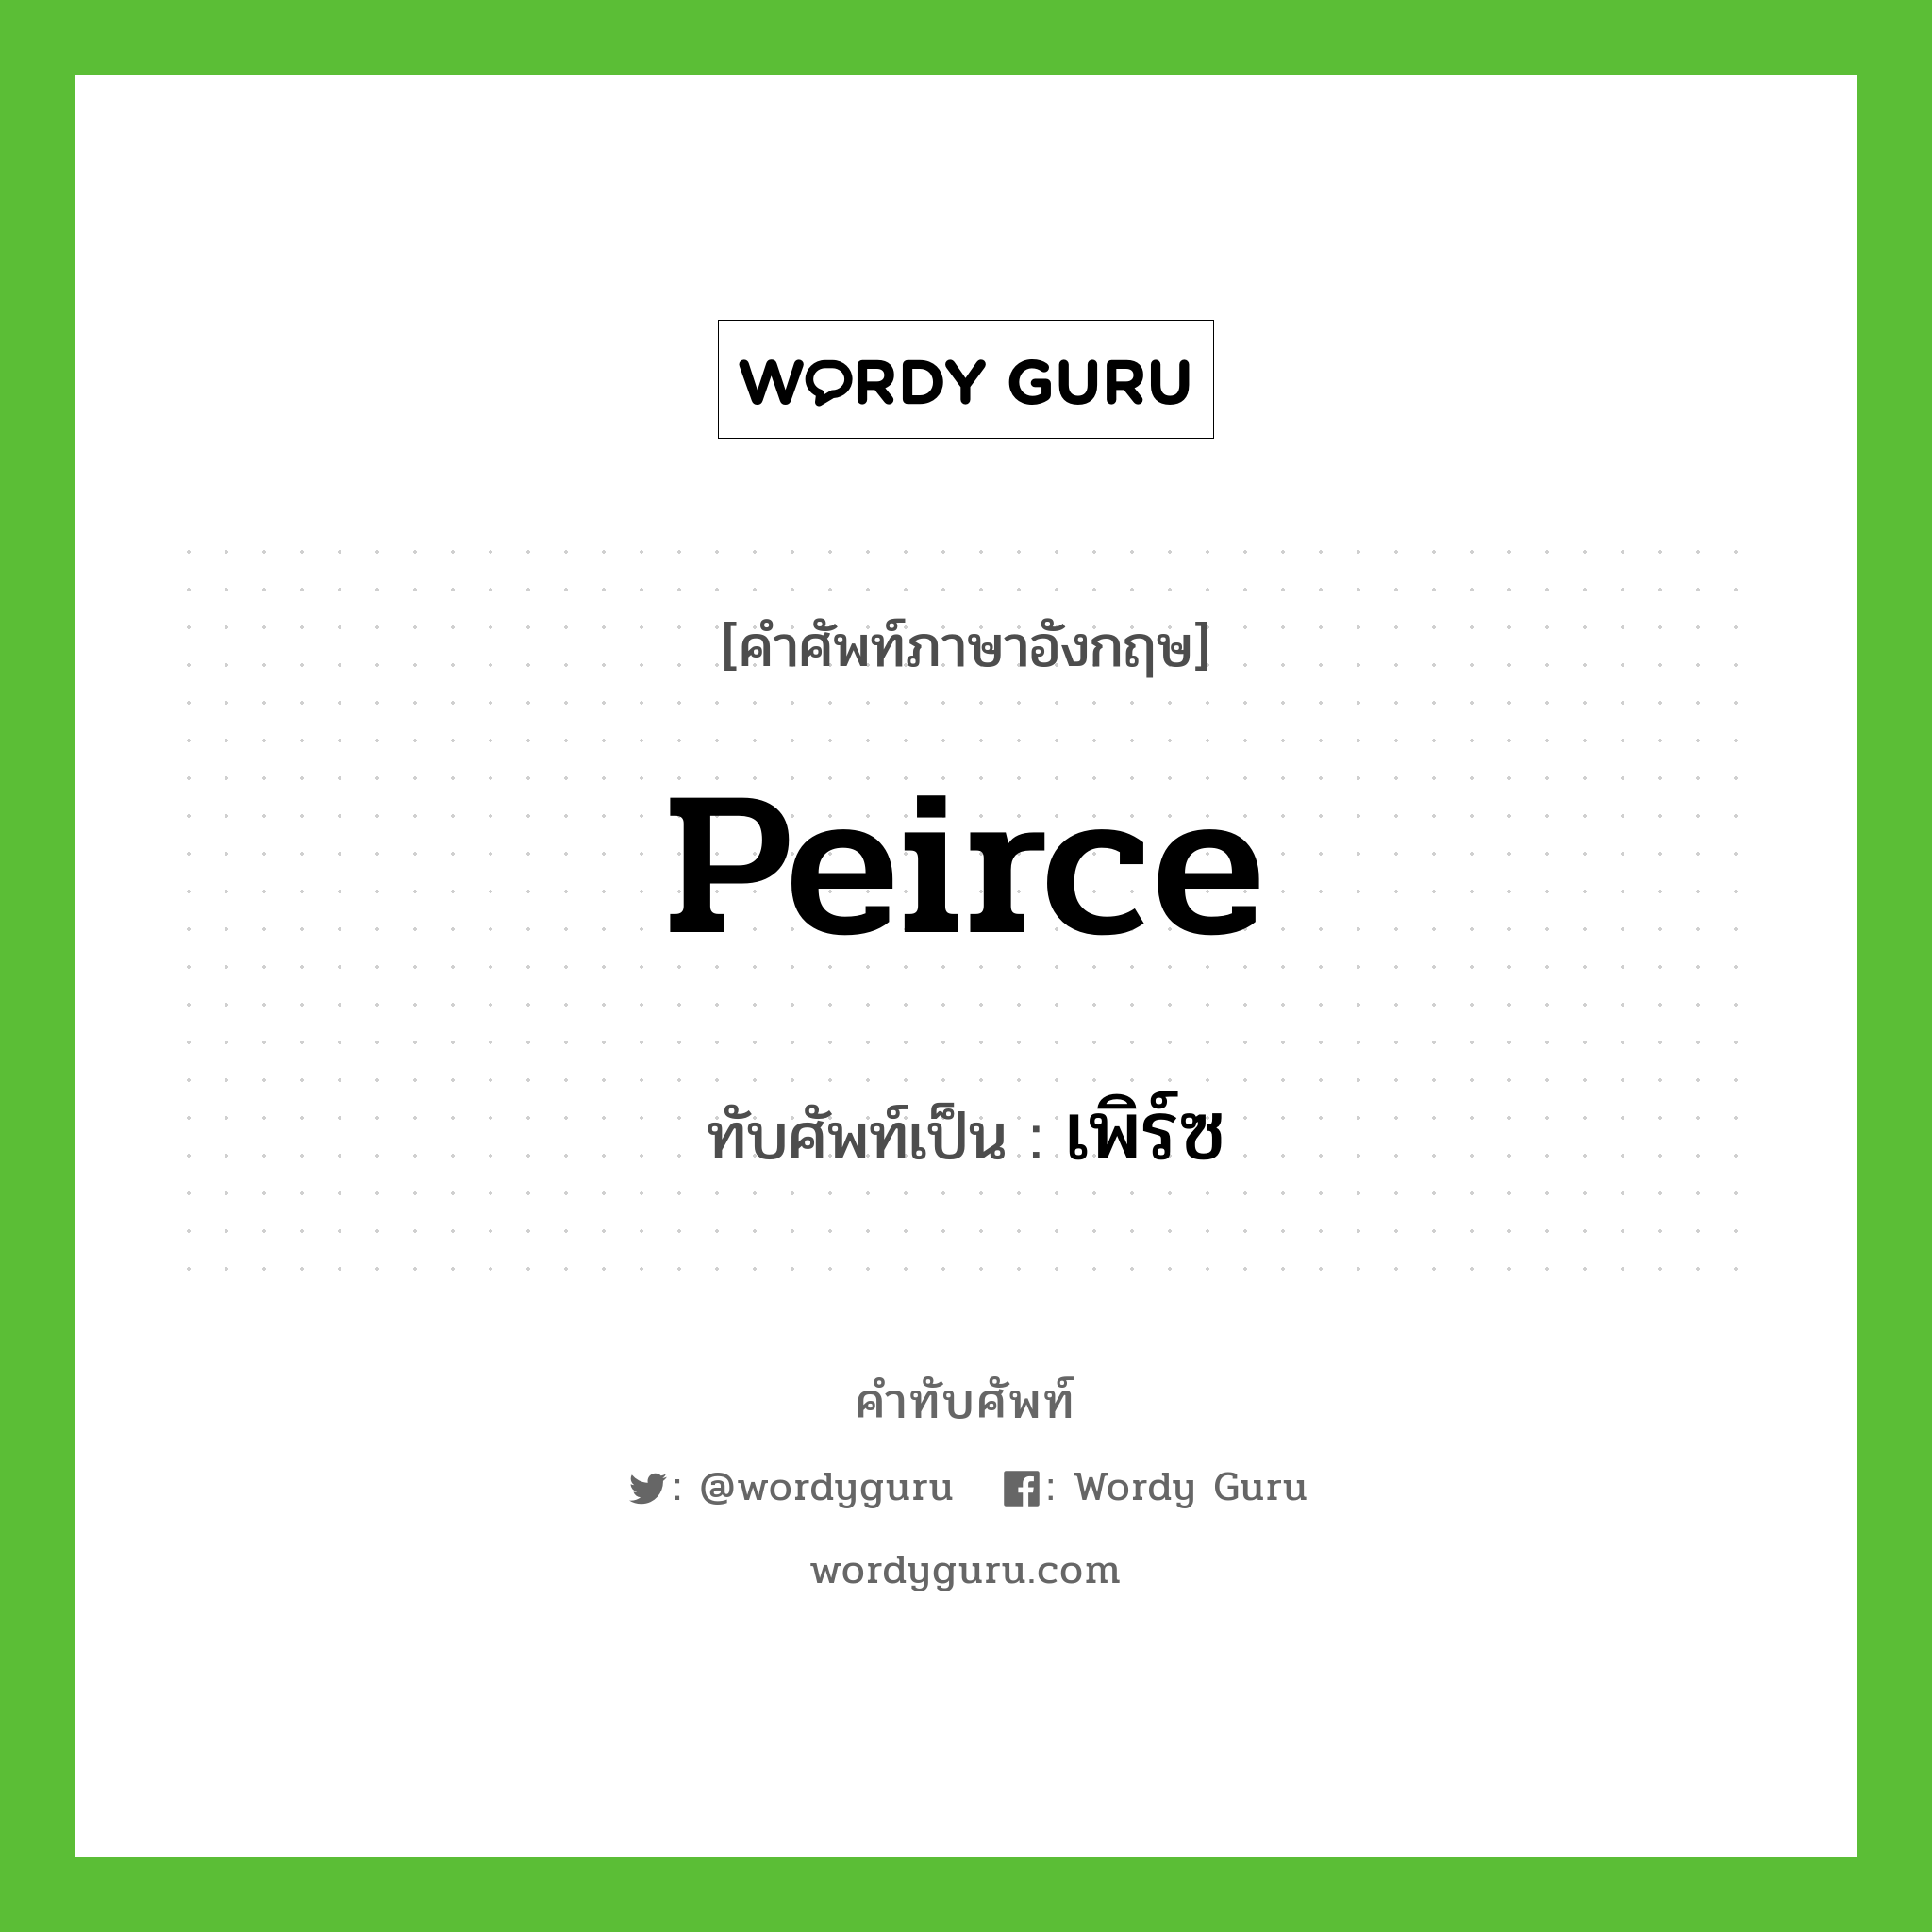 Peirce เขียนเป็นคำไทยว่าอะไร?, คำศัพท์ภาษาอังกฤษ Peirce ทับศัพท์เป็น เพิร์ซ